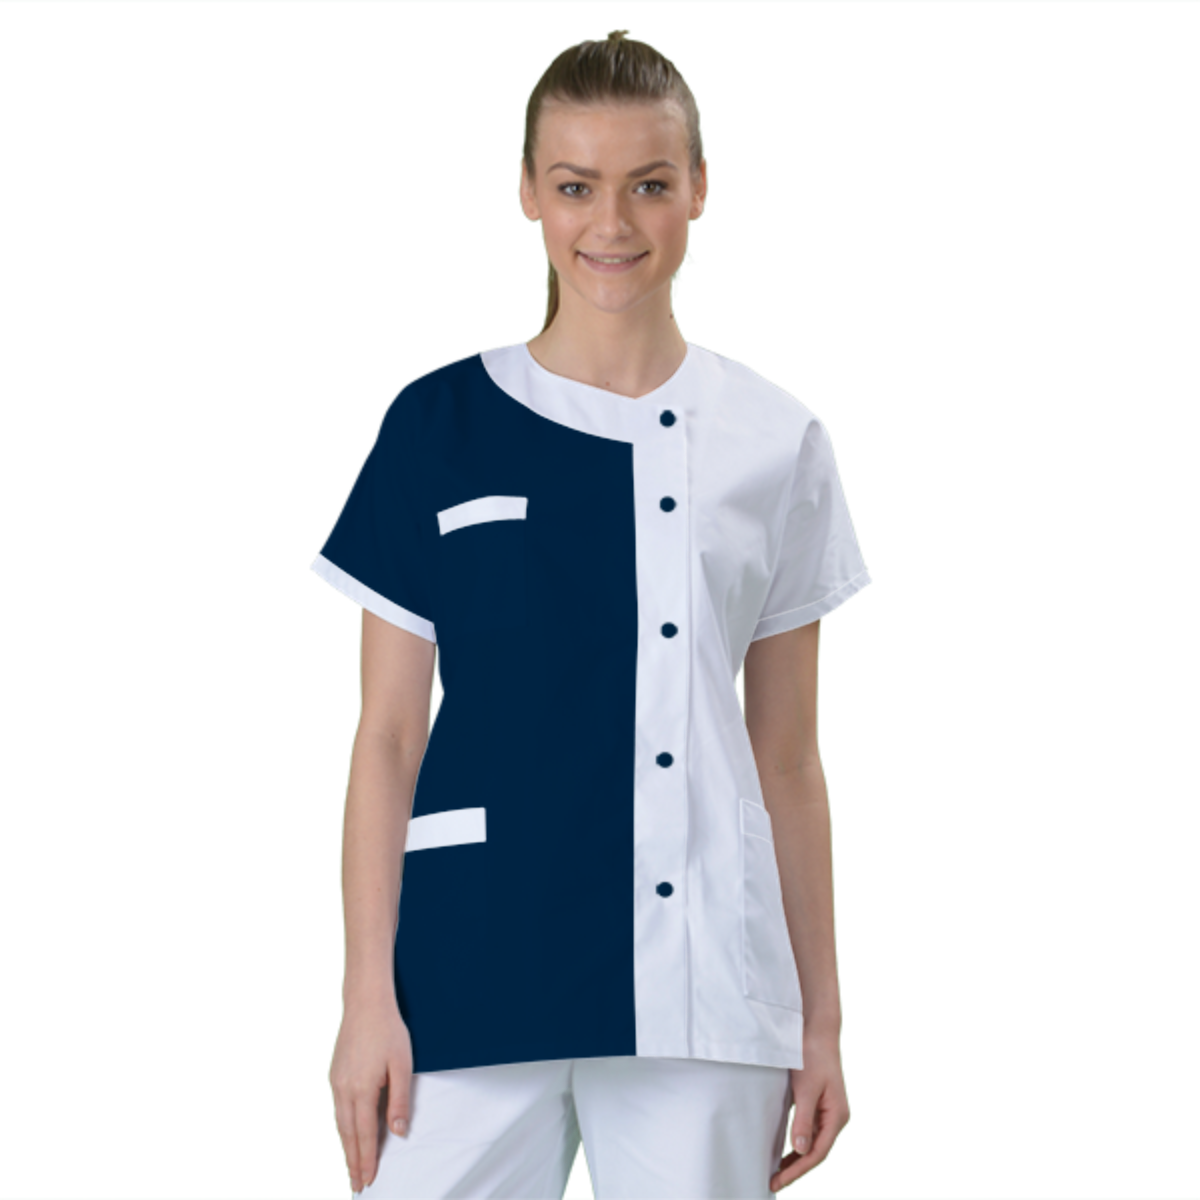 blouse-medicale-col-carre-a-personnaliser acheté - par Henriette - le 19-09-2018